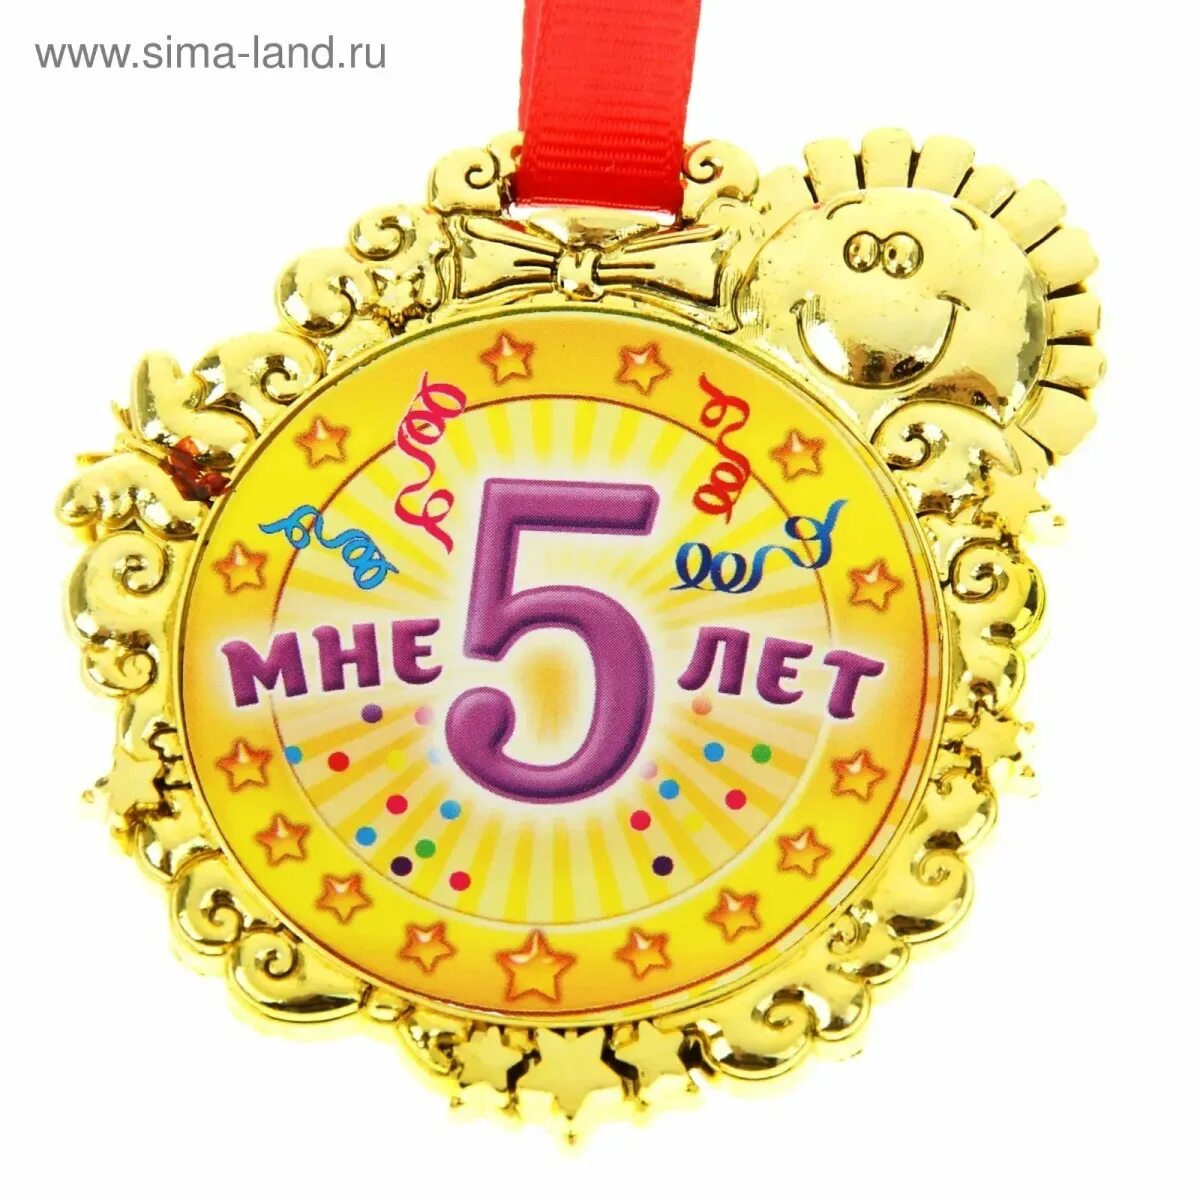 Юбилейный 5 букв. Медаль 5 лет. Медаль *с днем рождения*. Медаль с юбилеем. Медаль с днем рождения 5 лет.